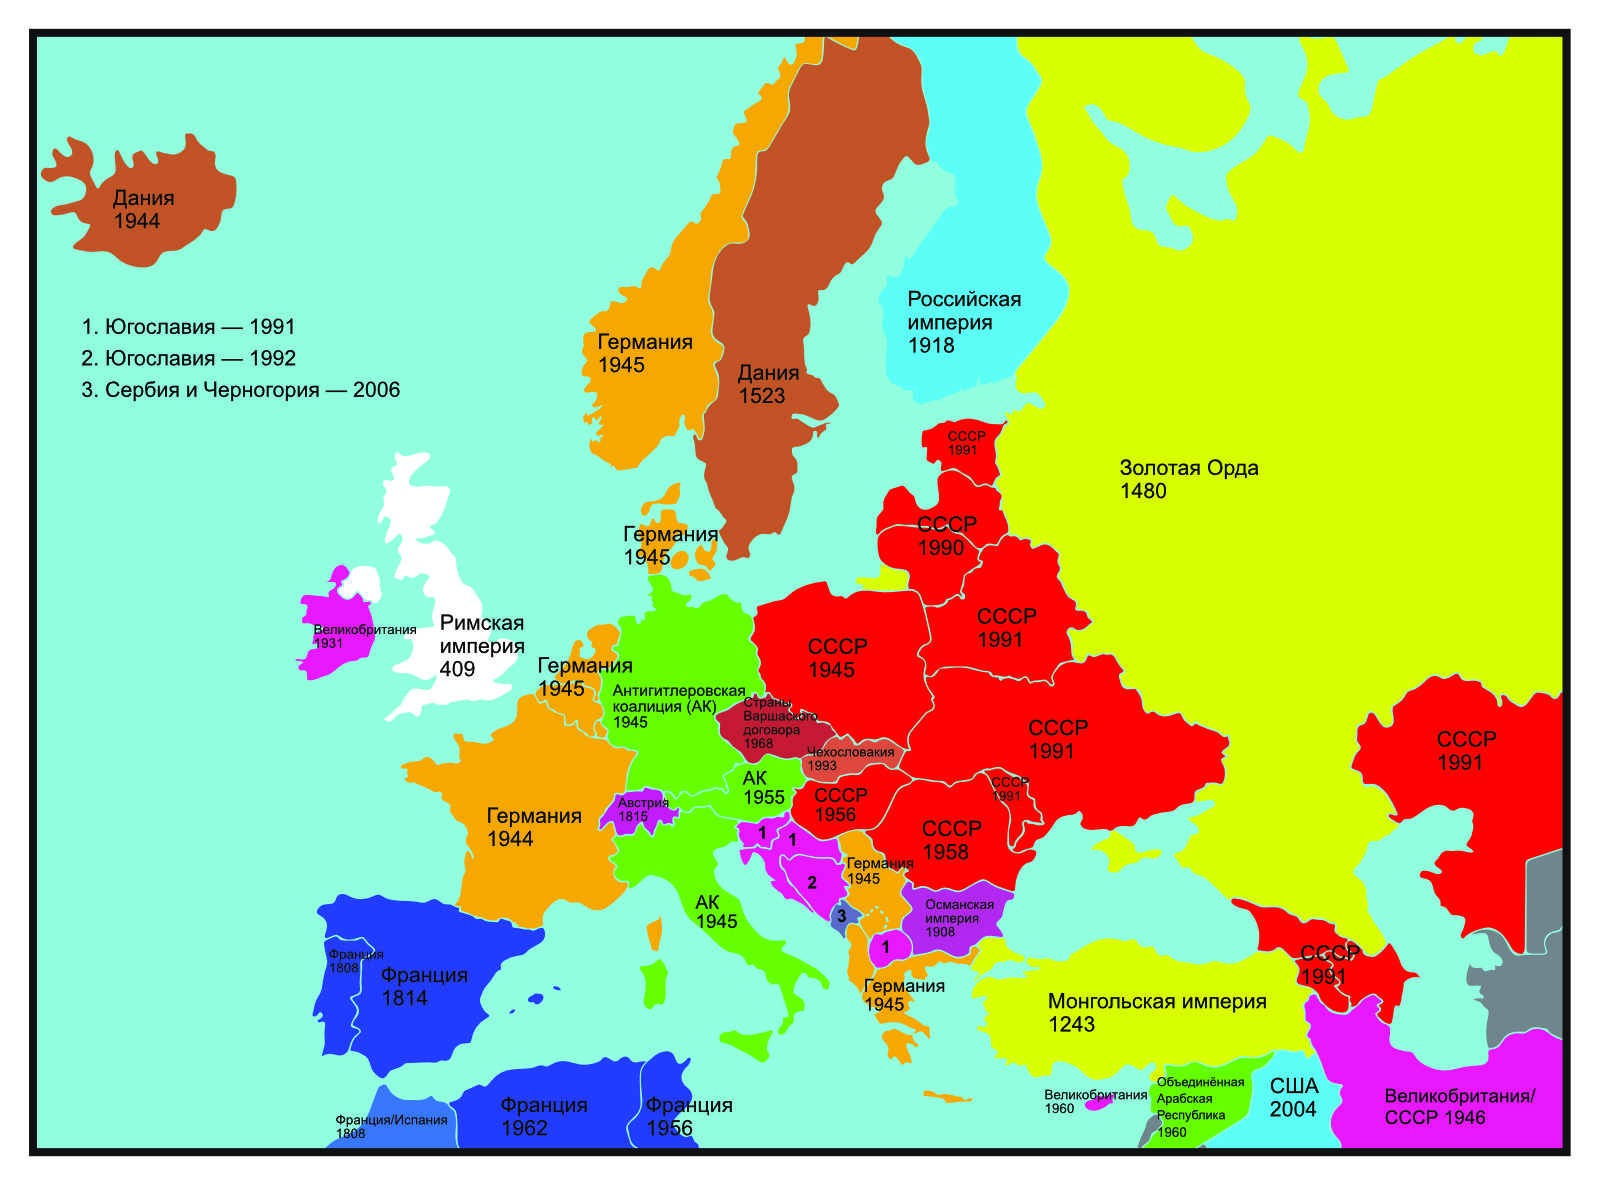 Карта: До какого года государства в Европе были частью другого государства